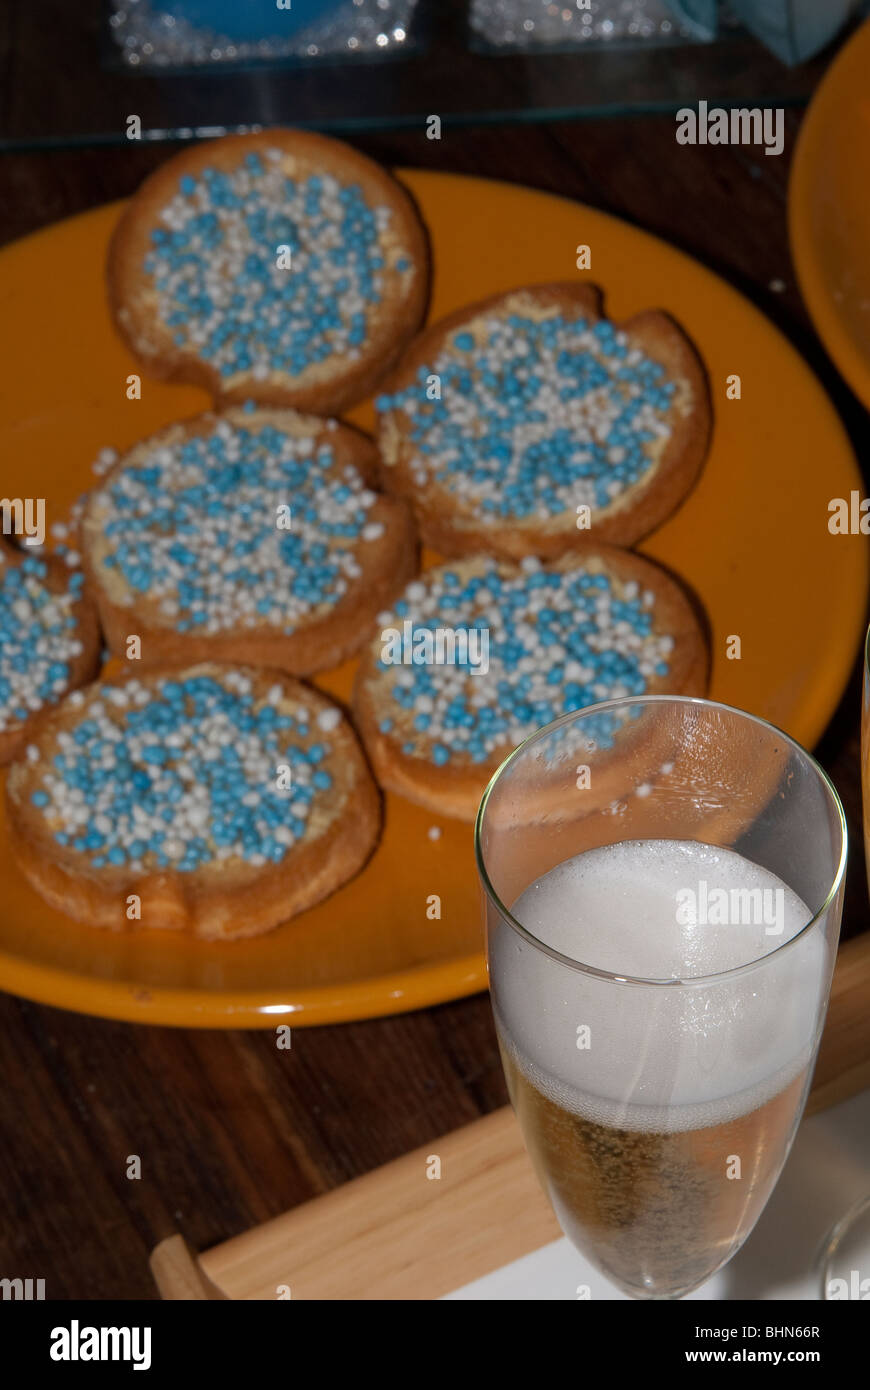 Biscuits avec sprinkles bleu et blanc pour célébrer la naissance d'un garçon selon tradition Néerlandaise Banque D'Images